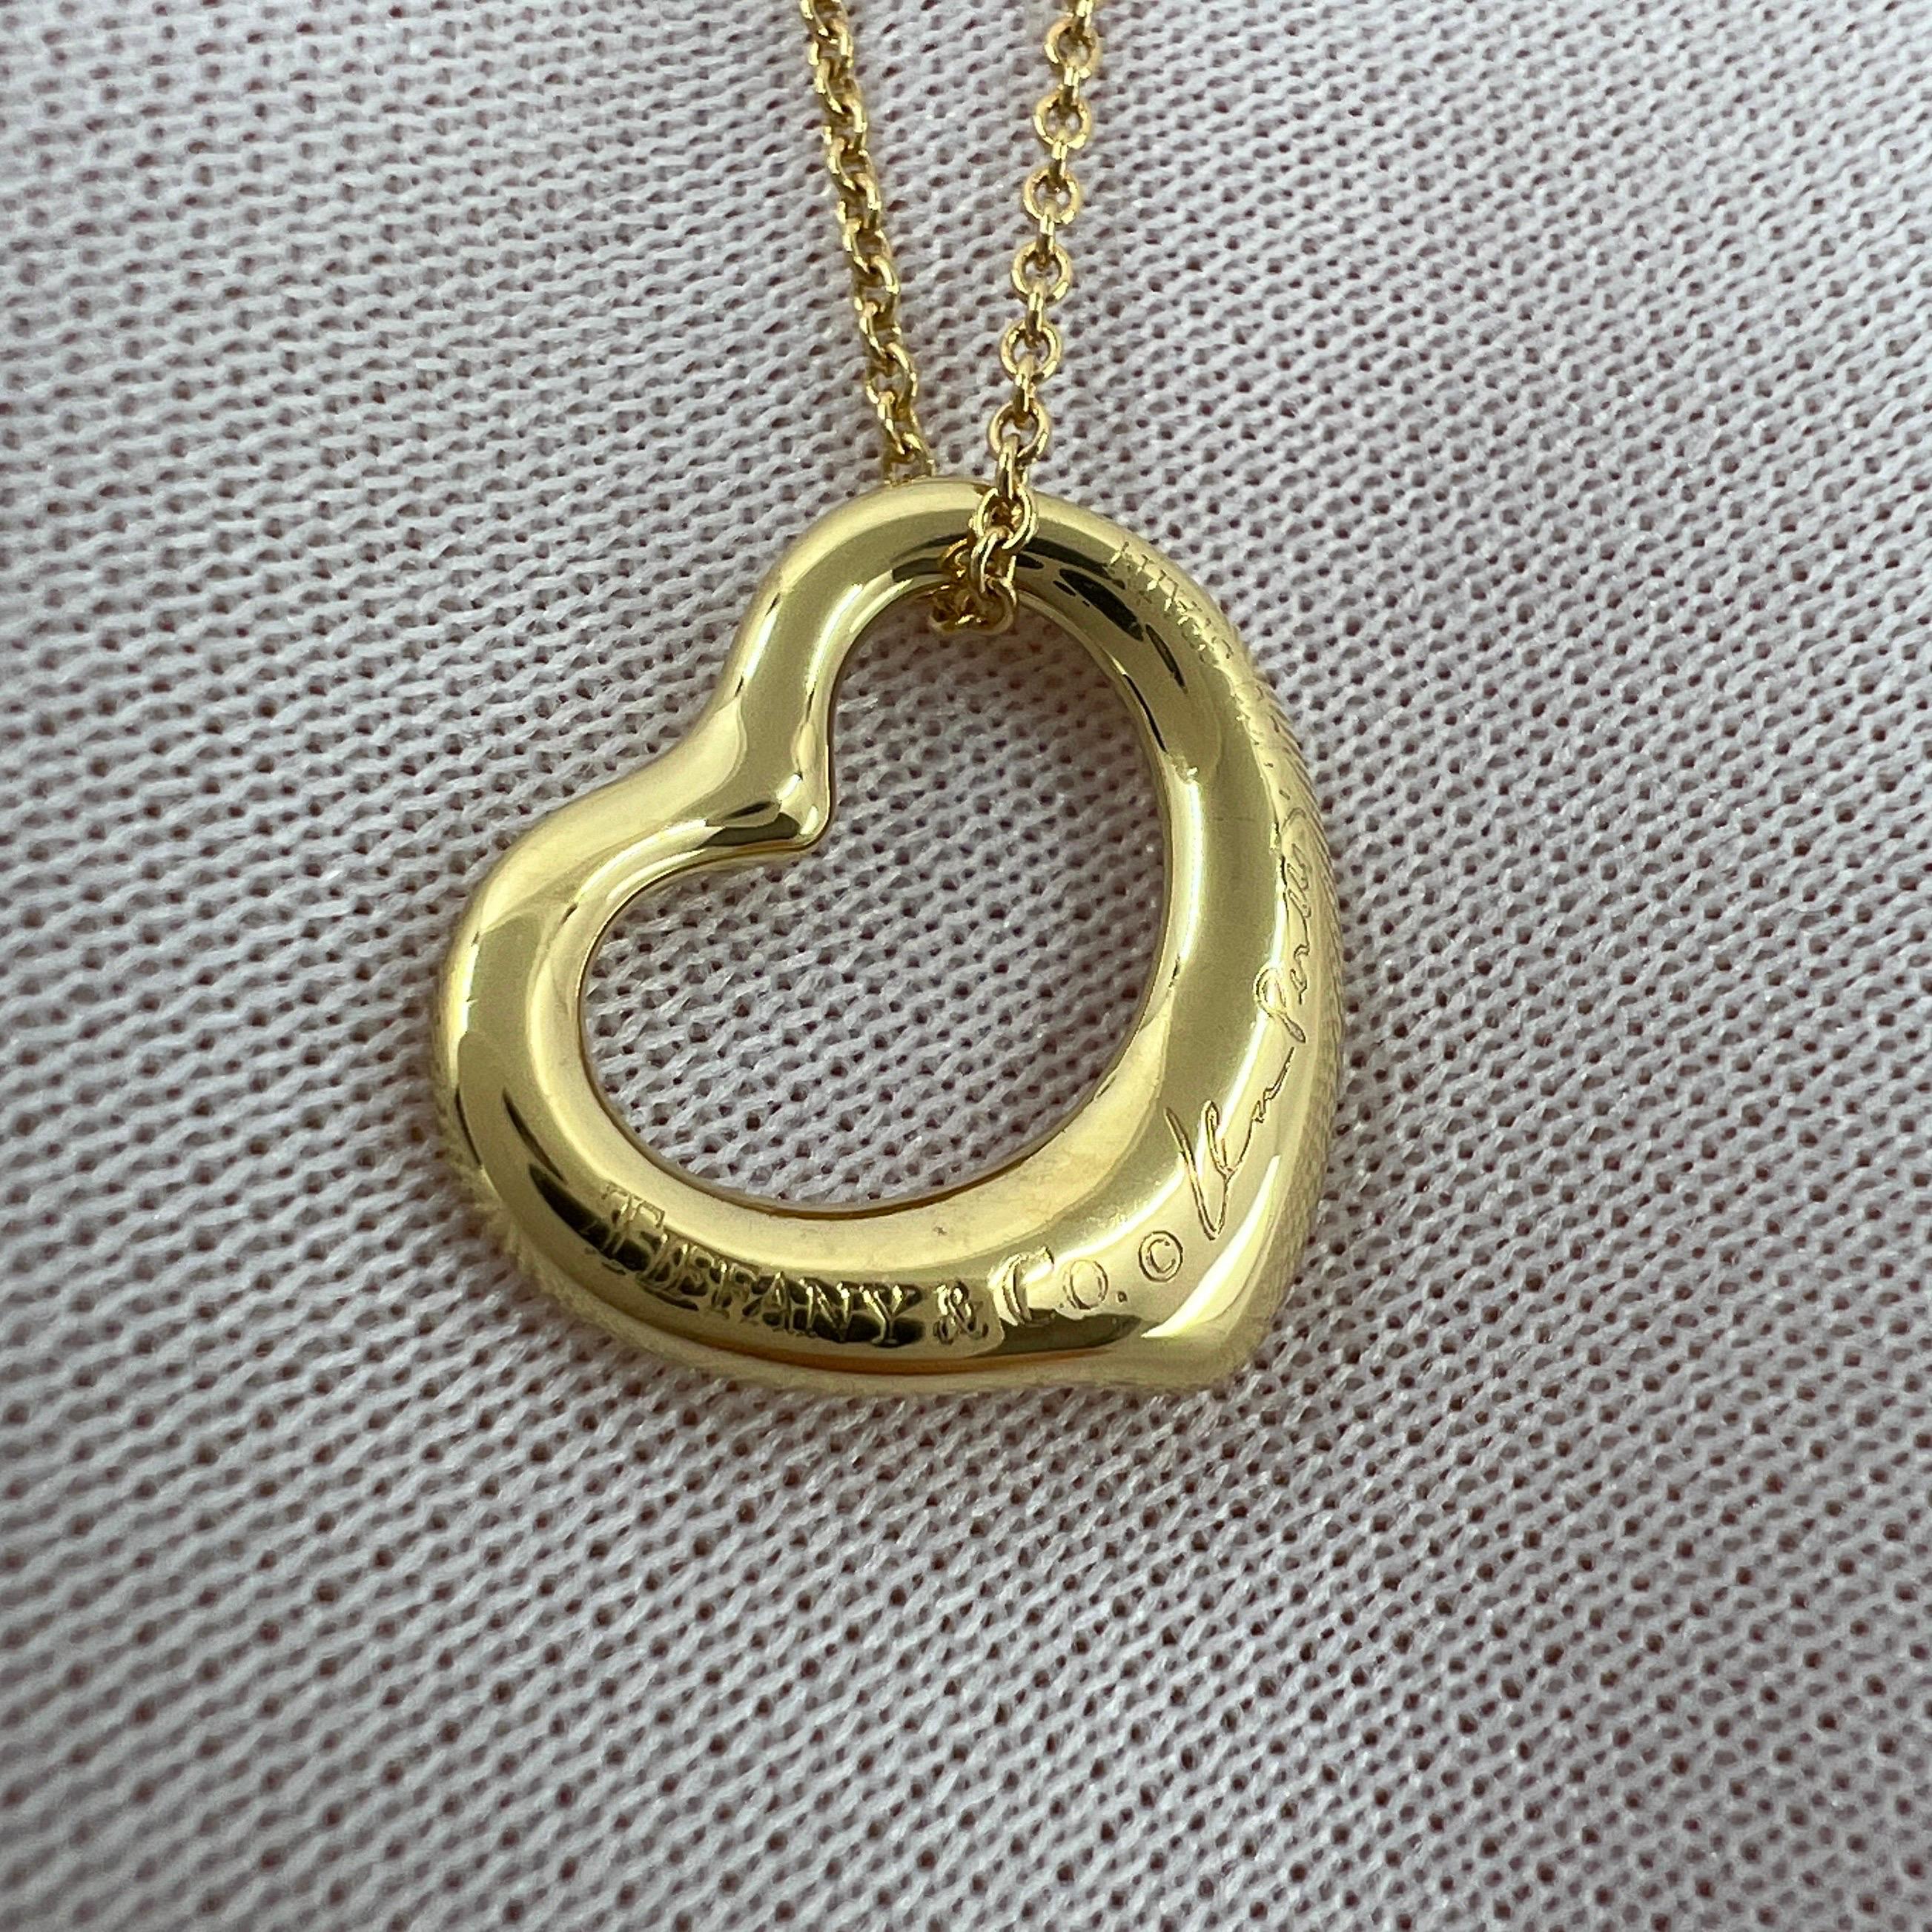 Tiffany & Co. Elsa Peretti Open Heart Diamond 18k Yellow Gold Pendant Necklace For Sale 4